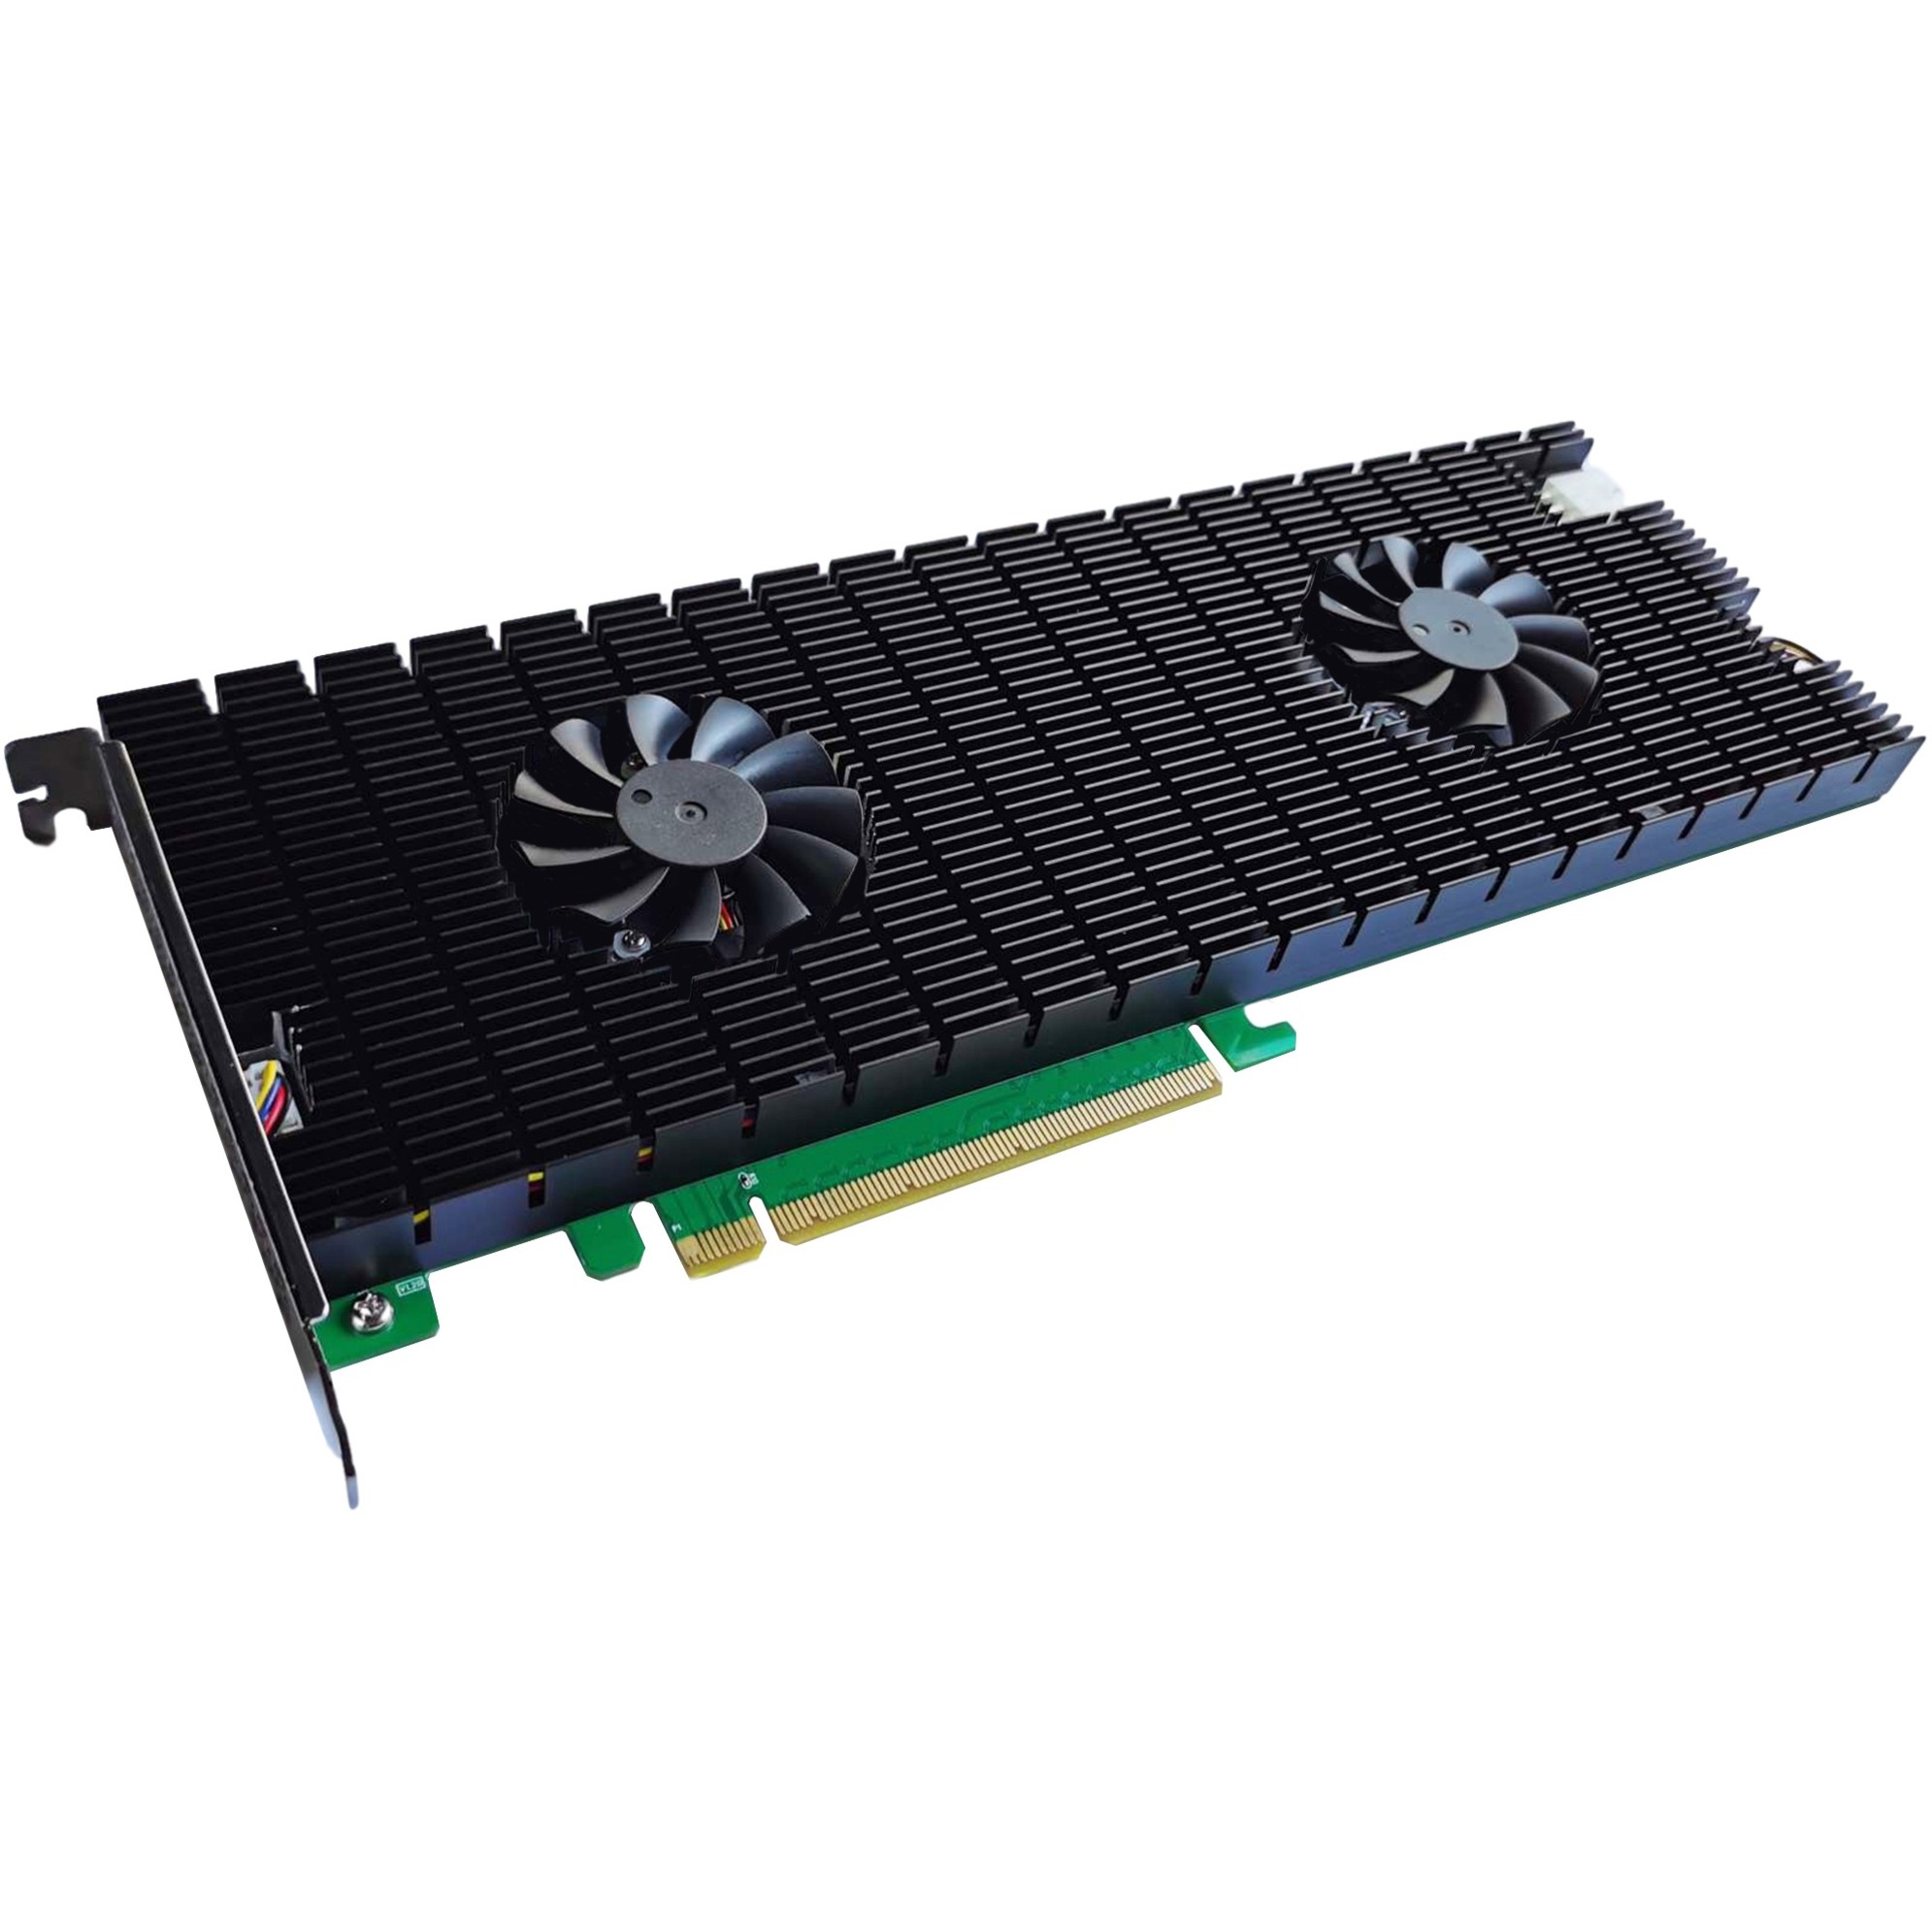 Image of Alternate - SSD7140 PCIe 3.0 8Port M.2 NVMe, Controller online einkaufen bei Alternate